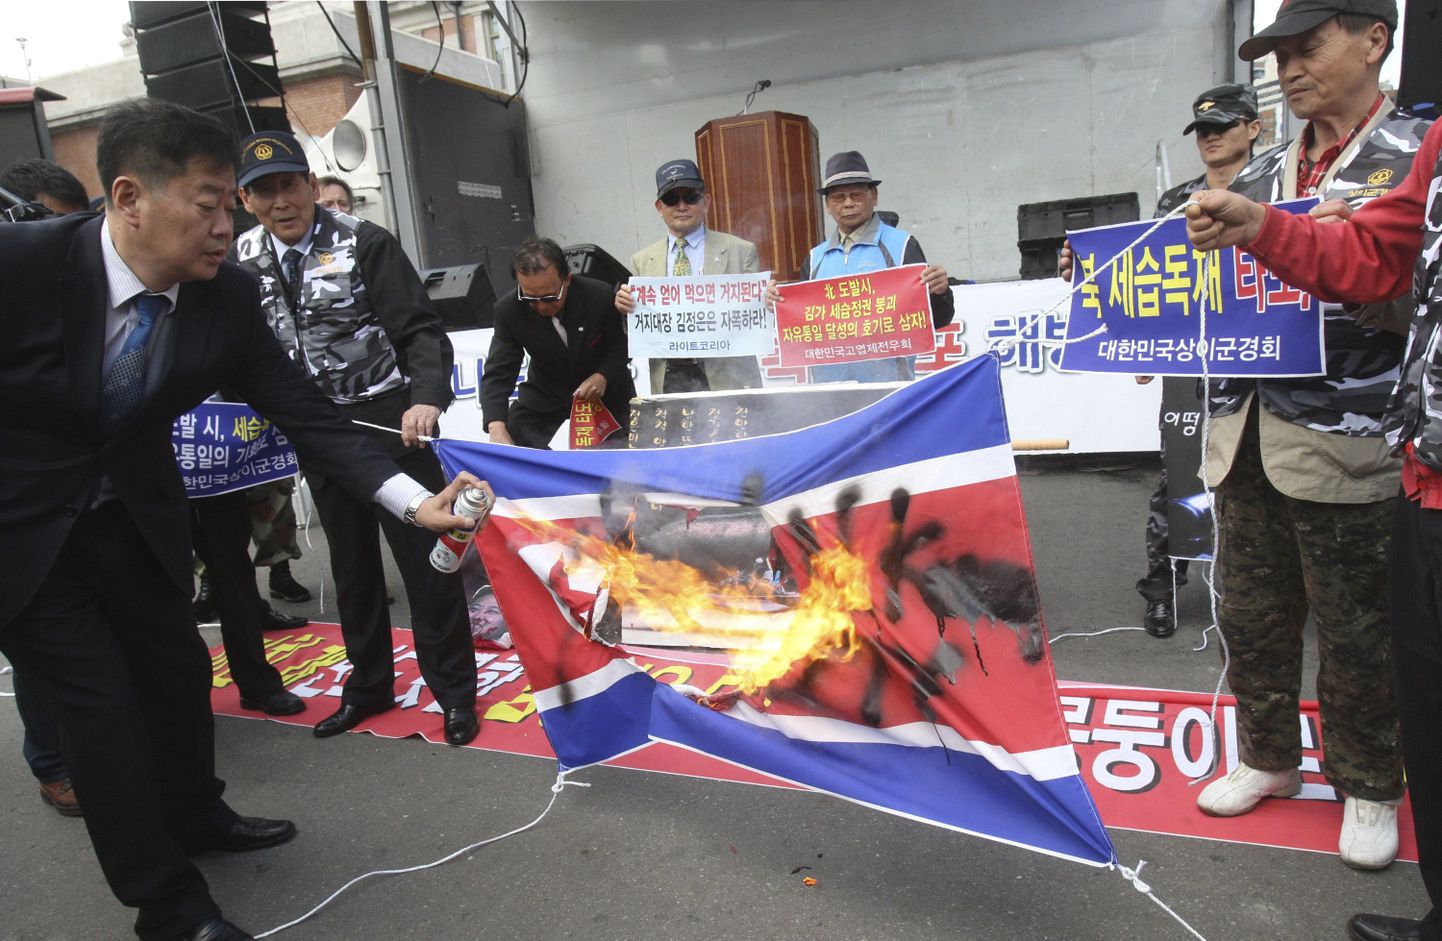 Lõuna-Korea sõjaveteranid ja aktivistid põletavad põhjanaabri lippu Souli ähvardamise pärast.